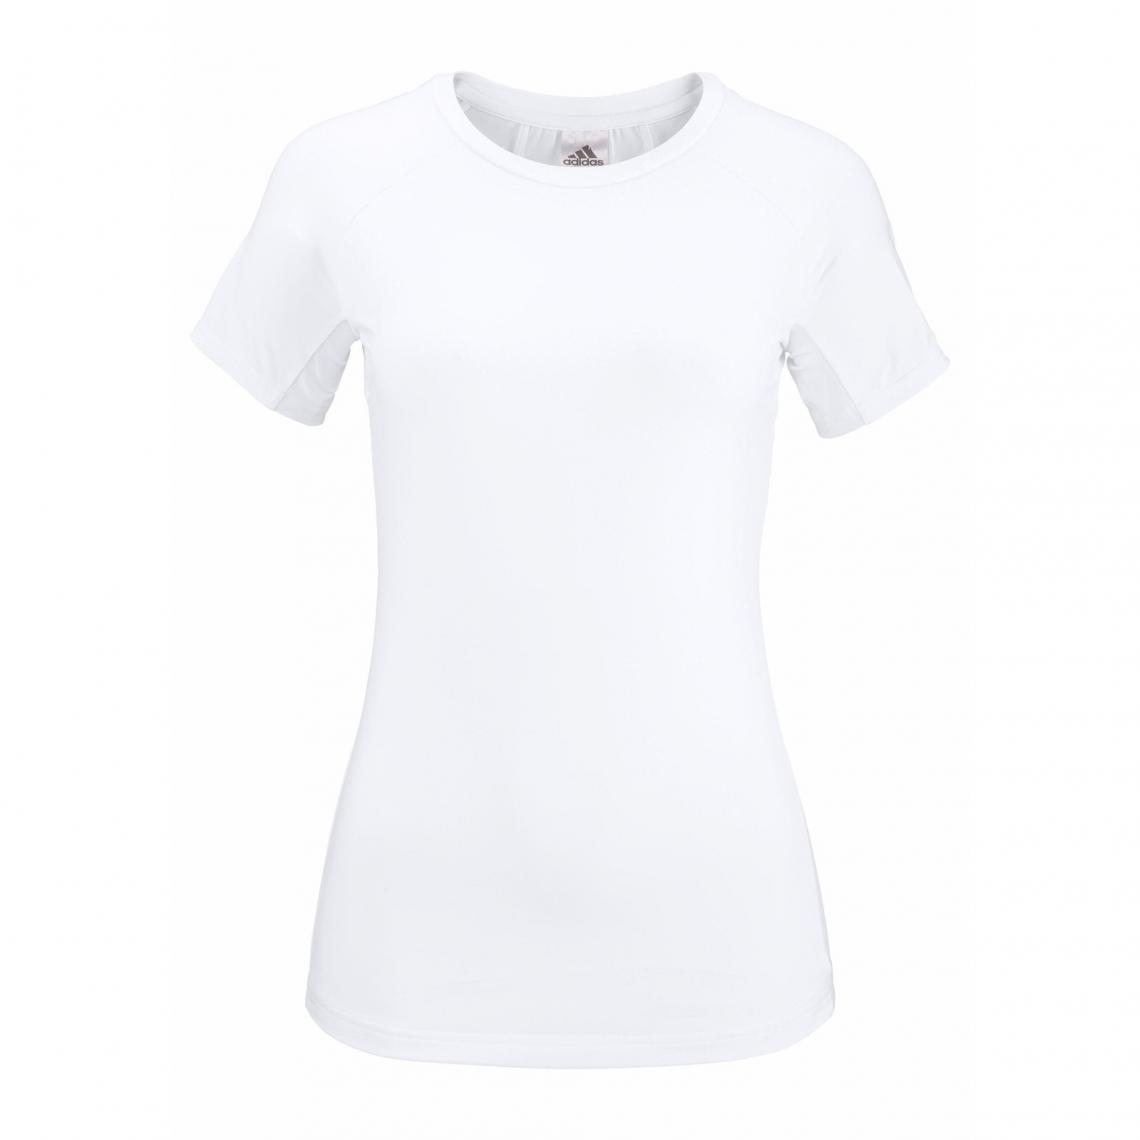 tee shirt adidas femme noir et blanc